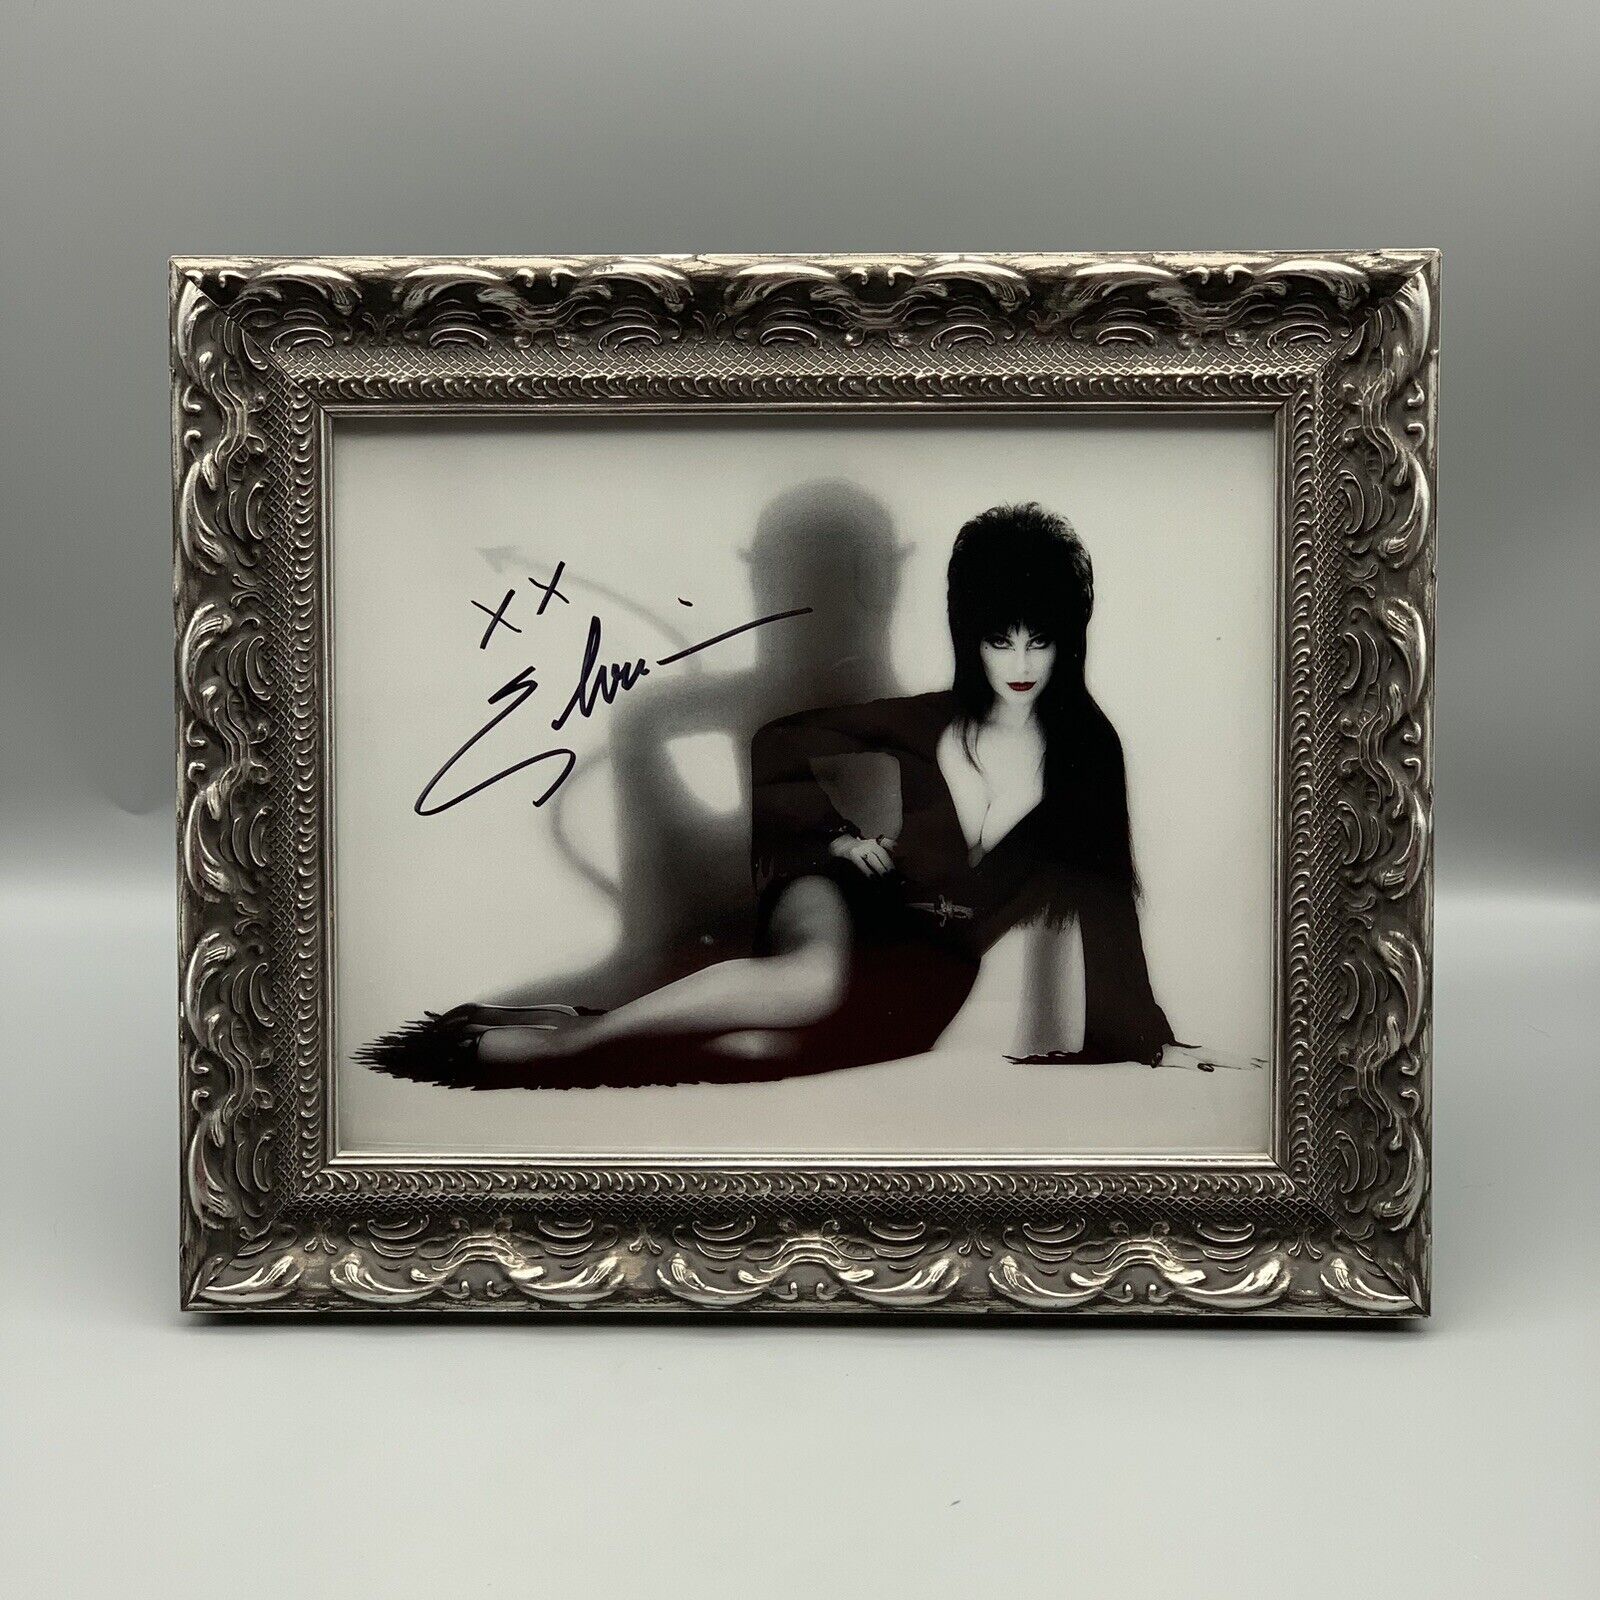 Vintage 2000 Elvira Autograph Photo 8” x 10” Mary Ann Halpin Framed RARE